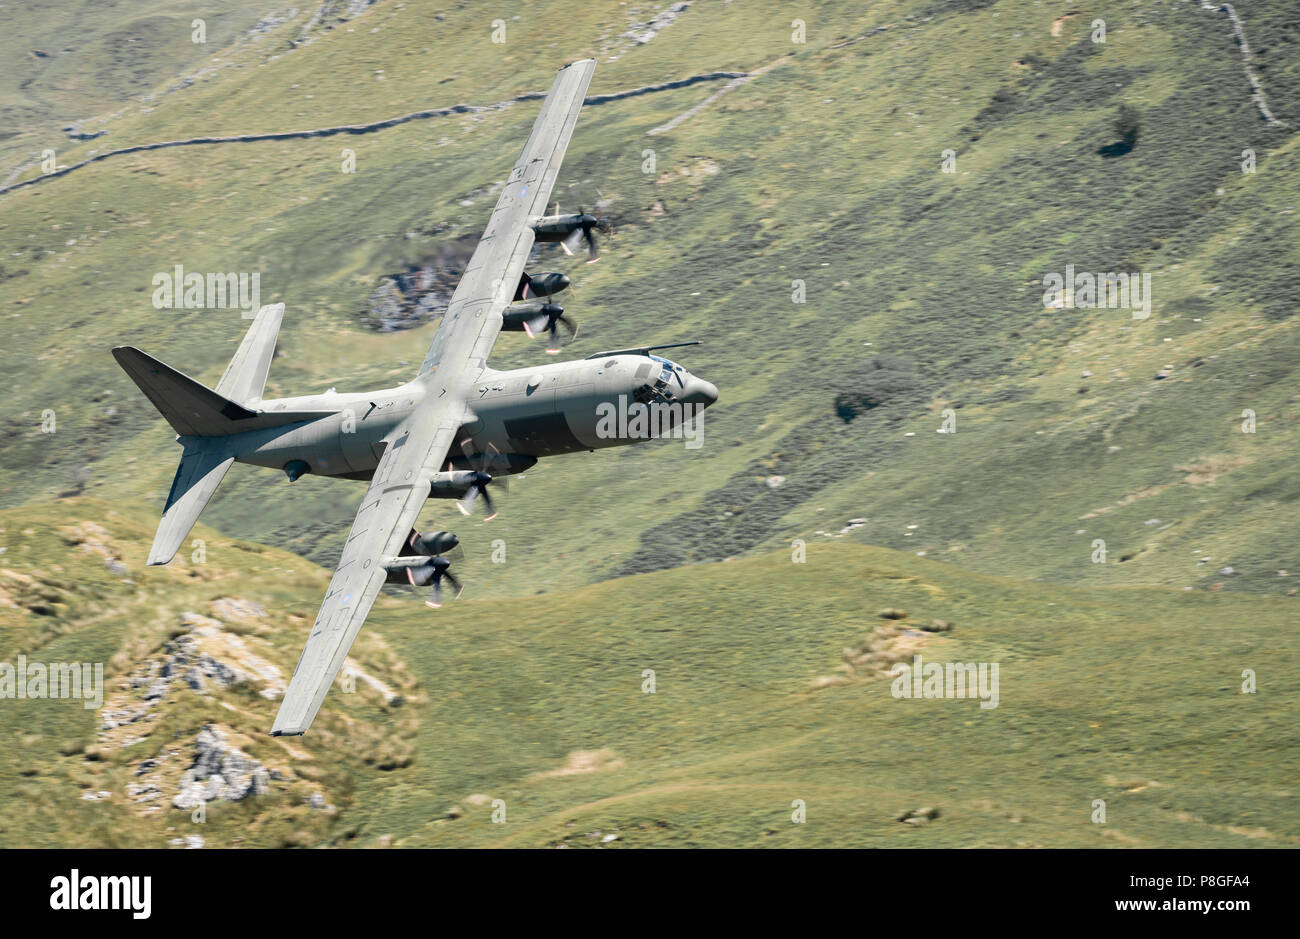 Un avion Hercules C-130 en passant par la boucle de Mach en juillet 2018 Banque D'Images